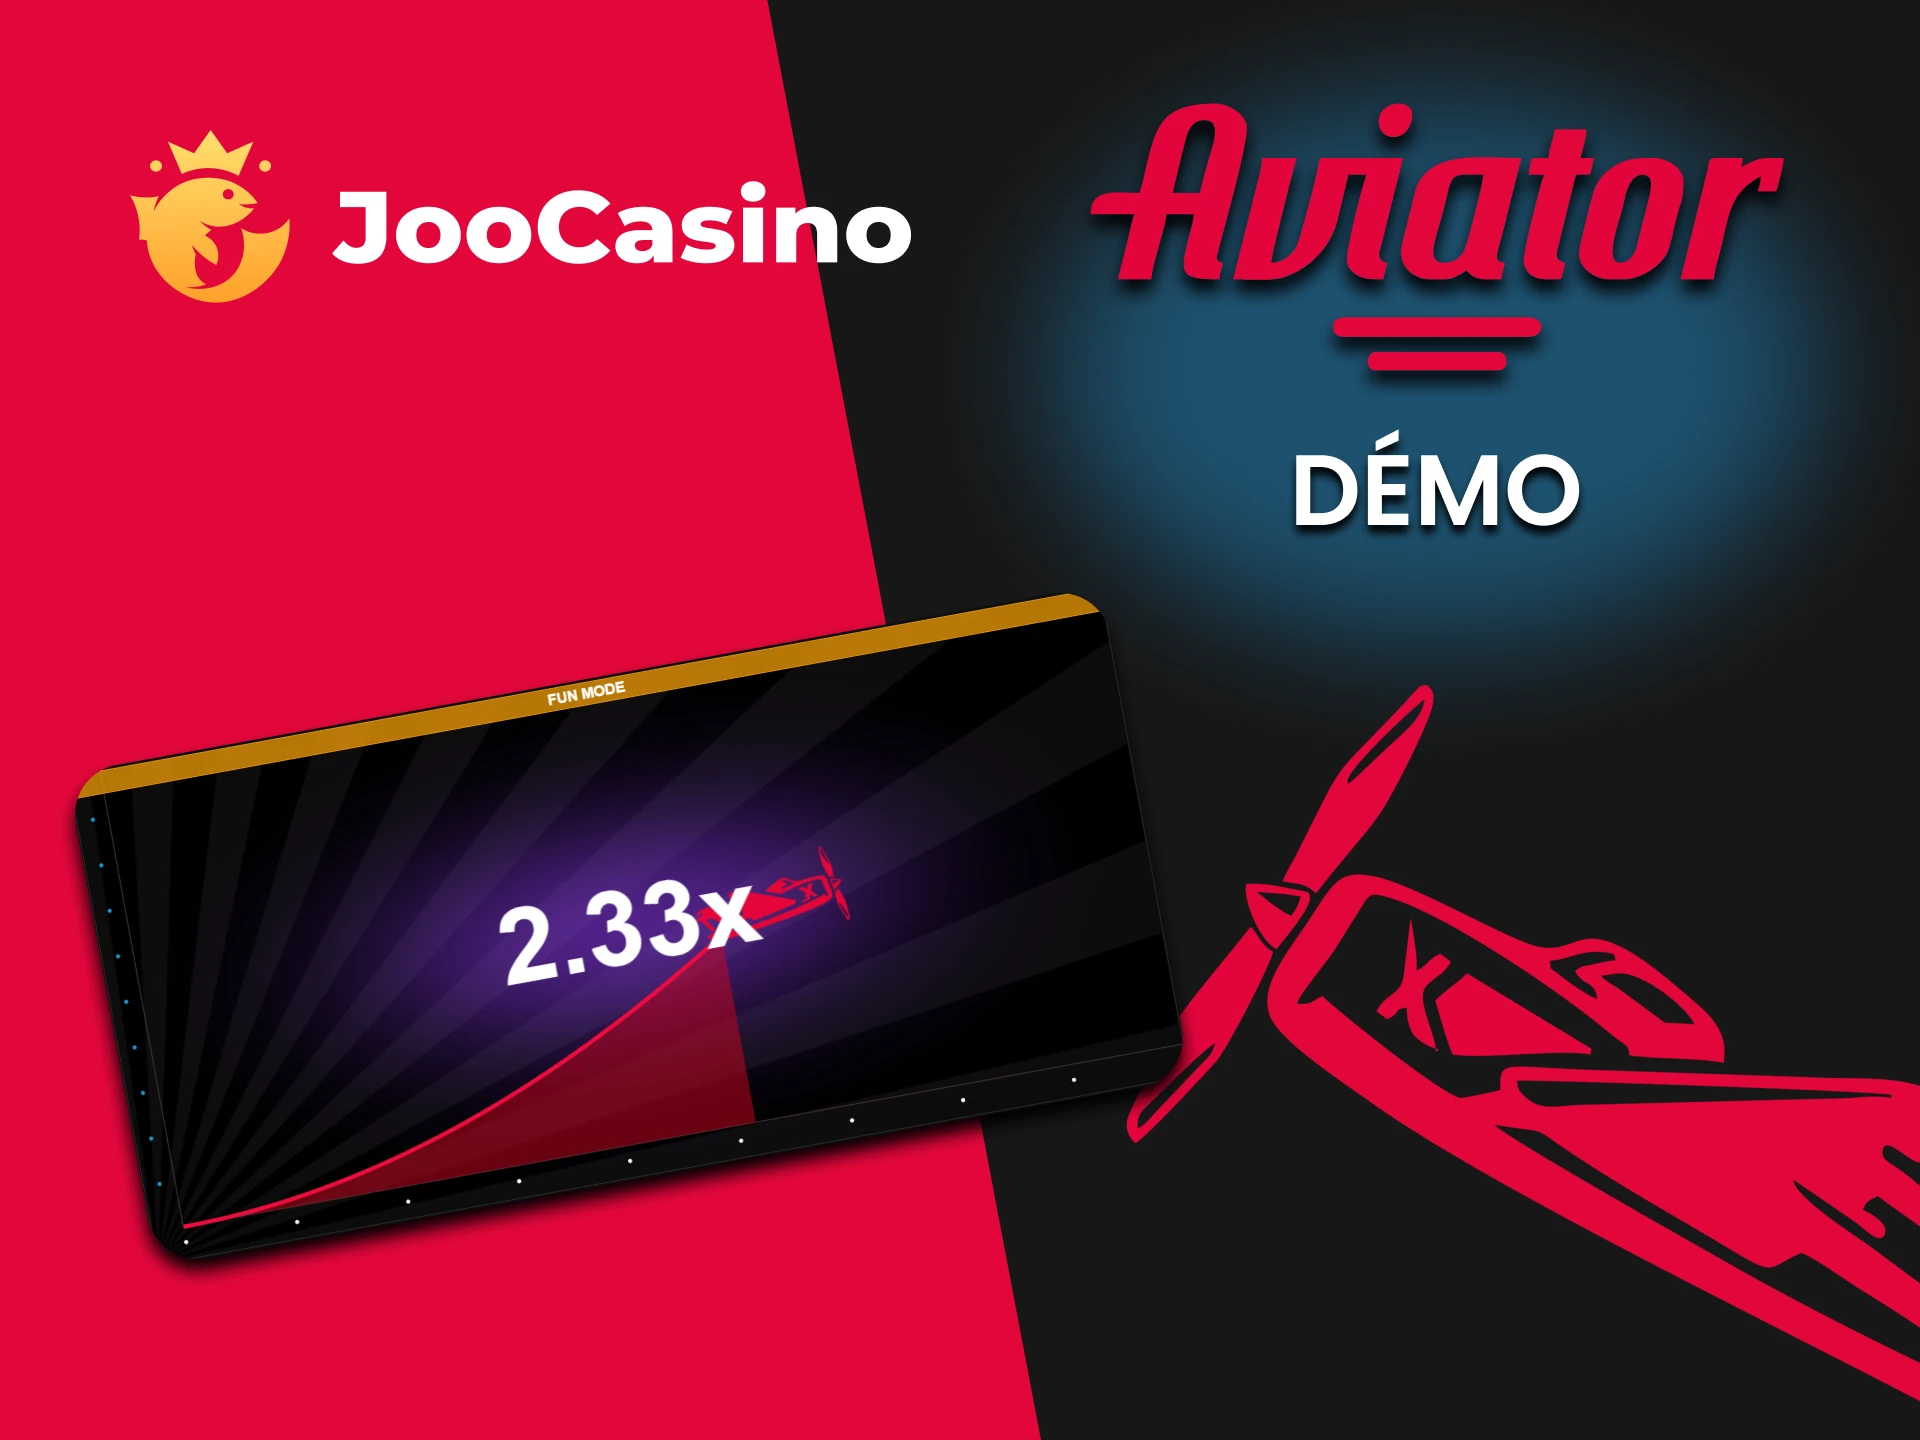 Joo Casino propose une version démo du jeu Aviator.